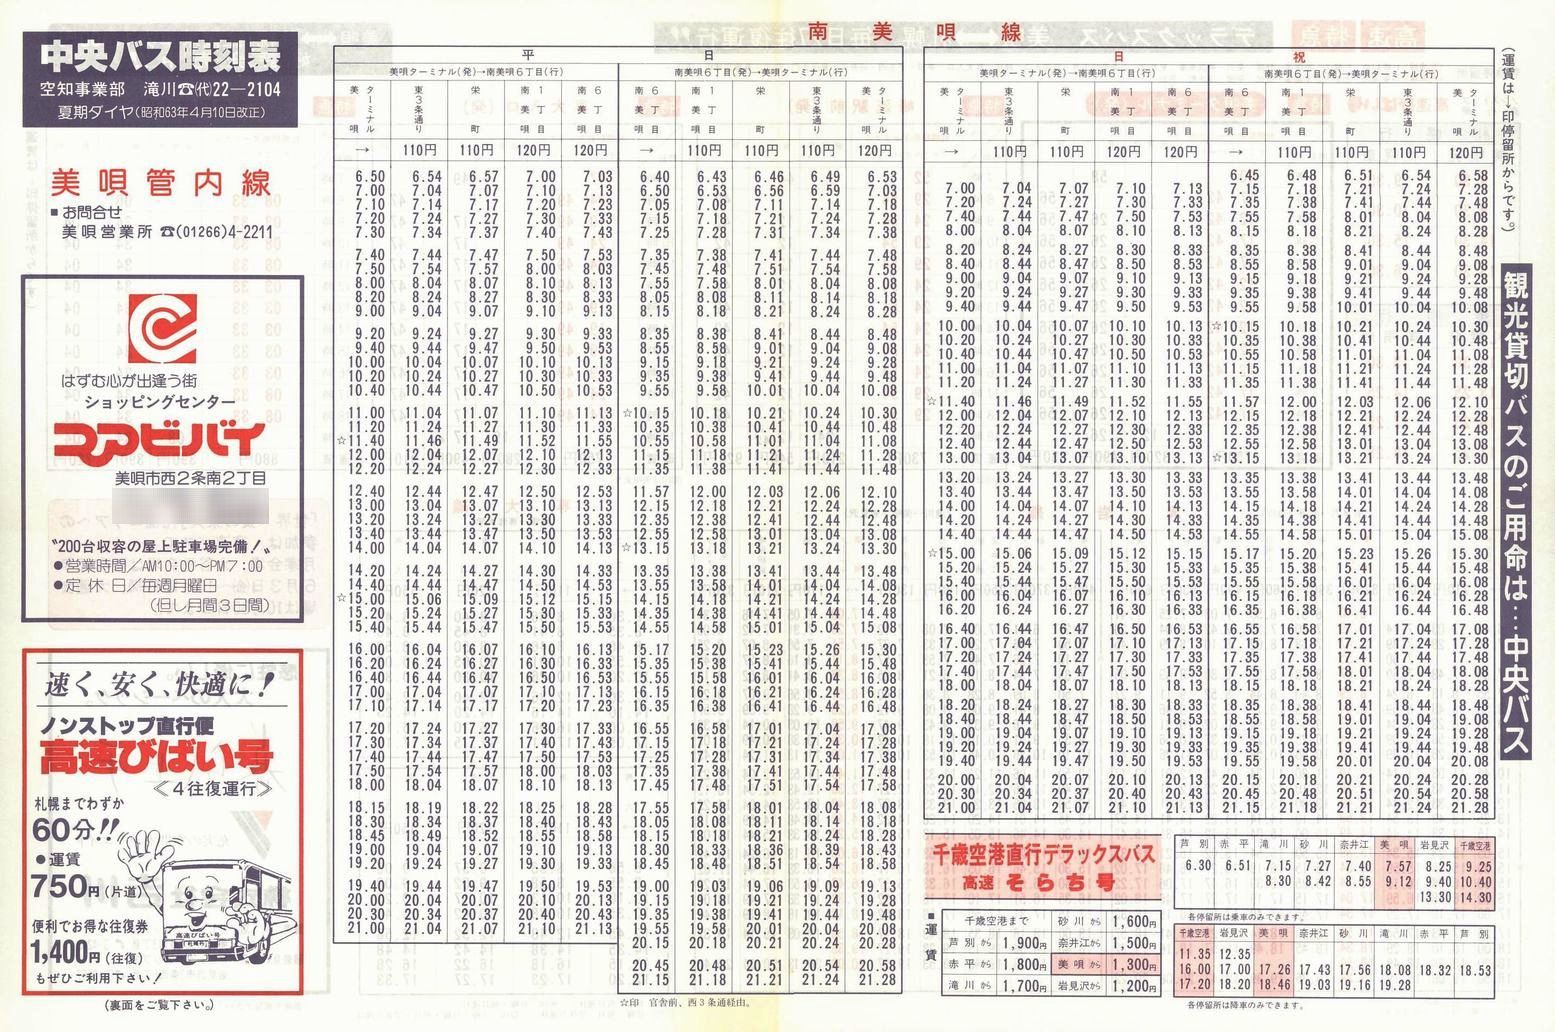 1988-04-10改正_北海道中央バス(空知)_美唄管内線時刻表表面